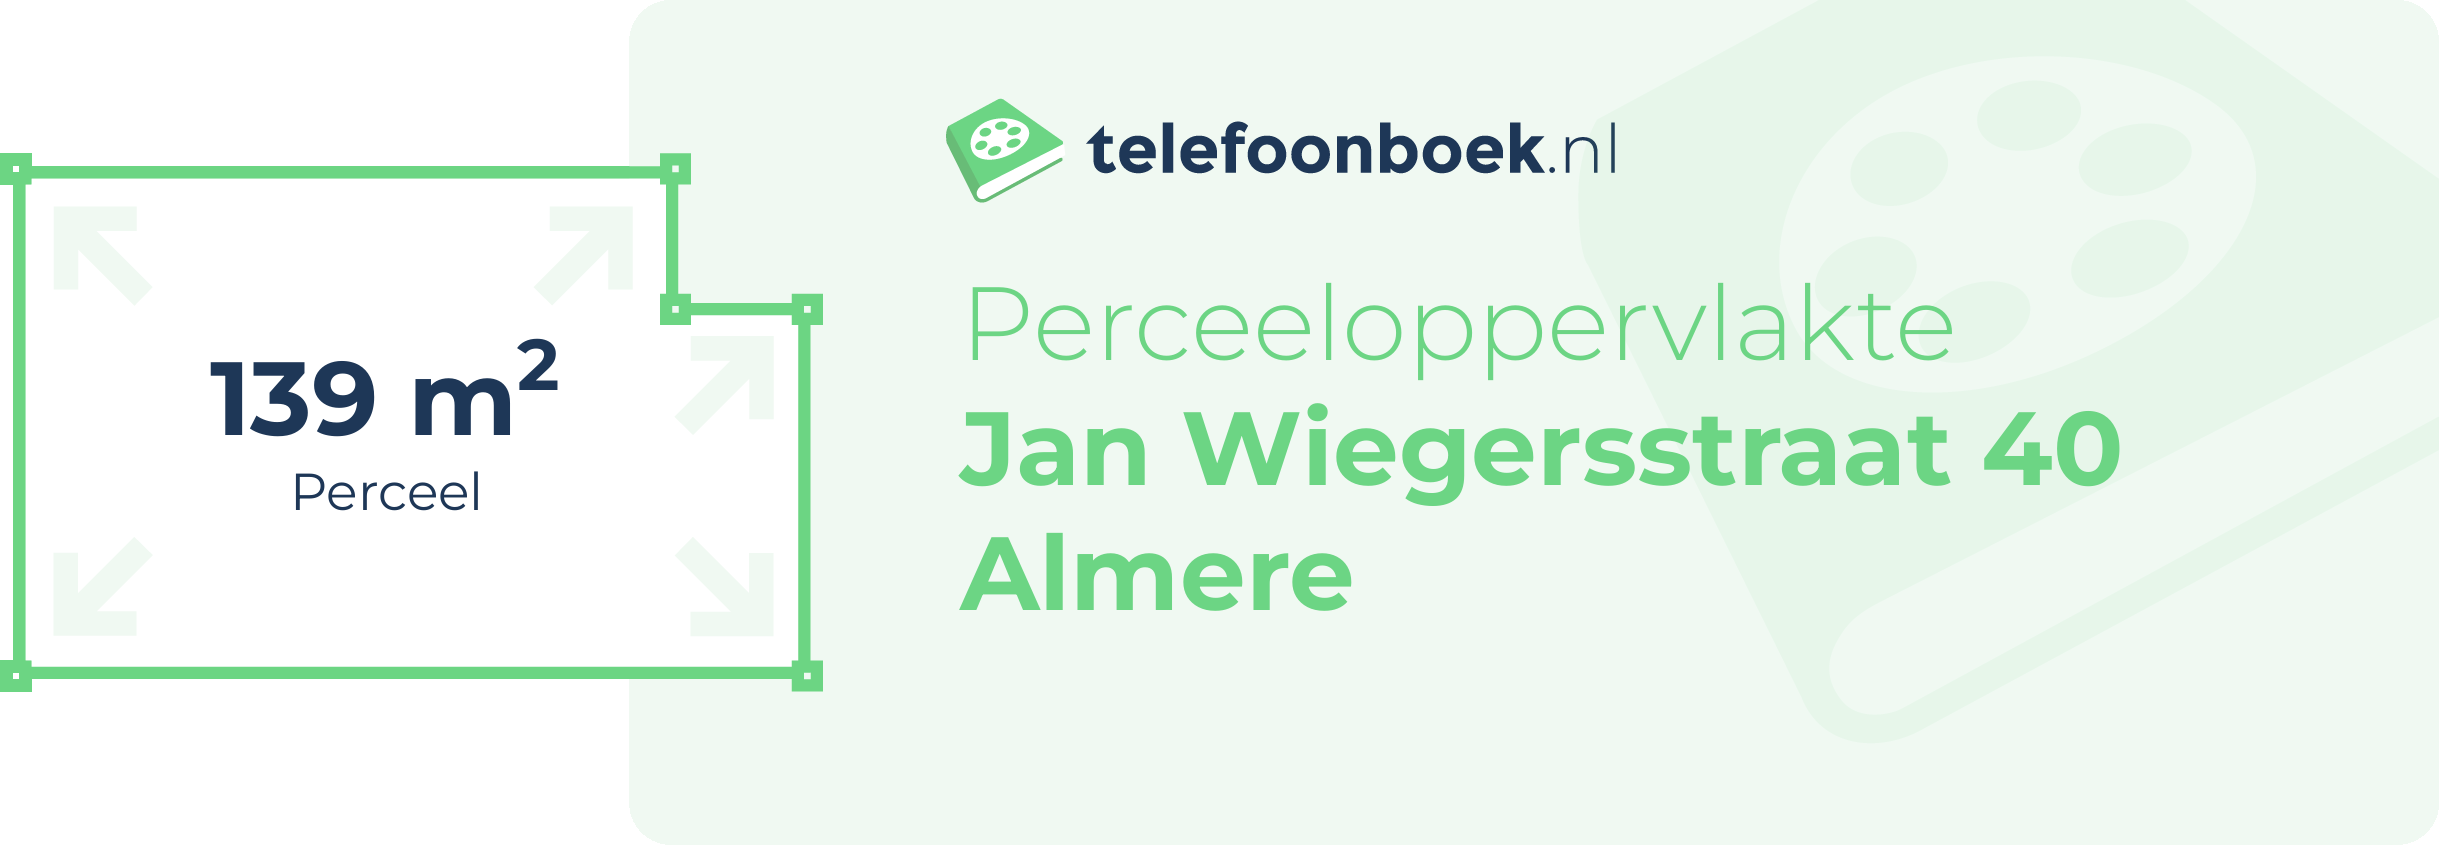 Perceeloppervlakte Jan Wiegersstraat 40 Almere